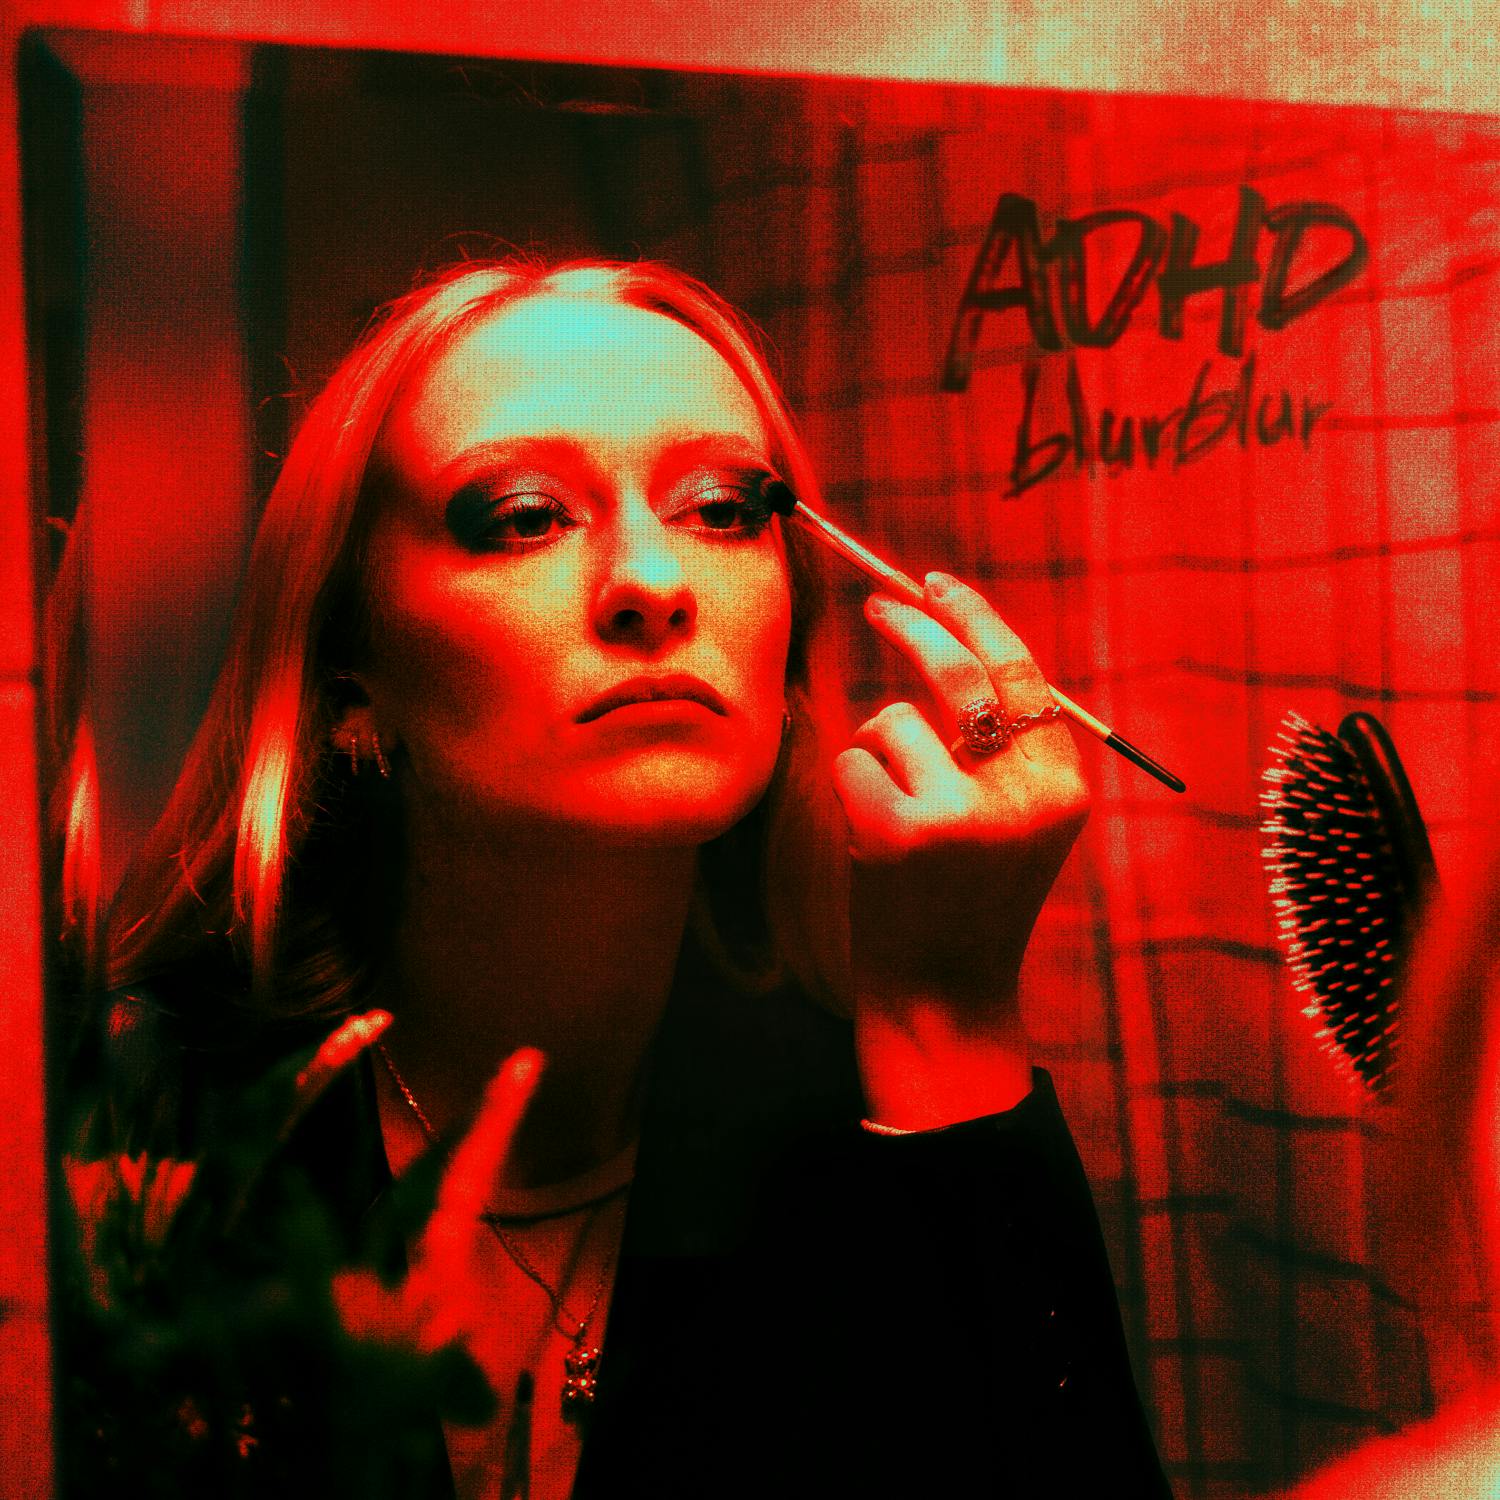 blurblur - ADHD (Cover)